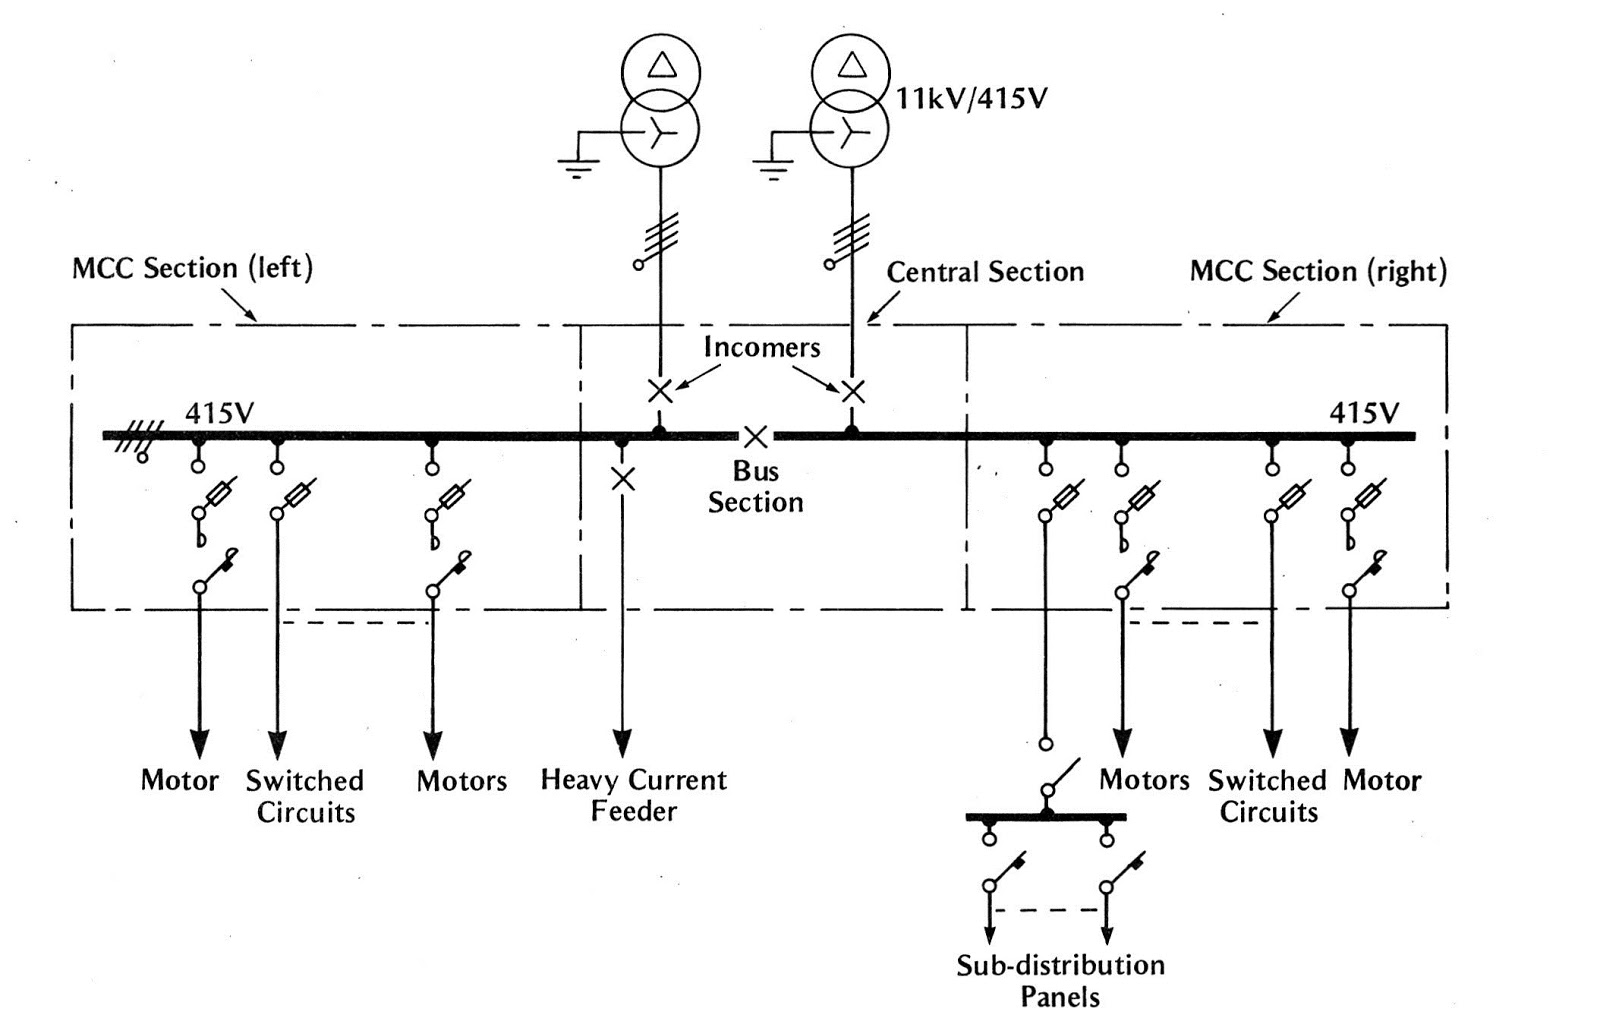 Low-voltage switchgear fundamentals